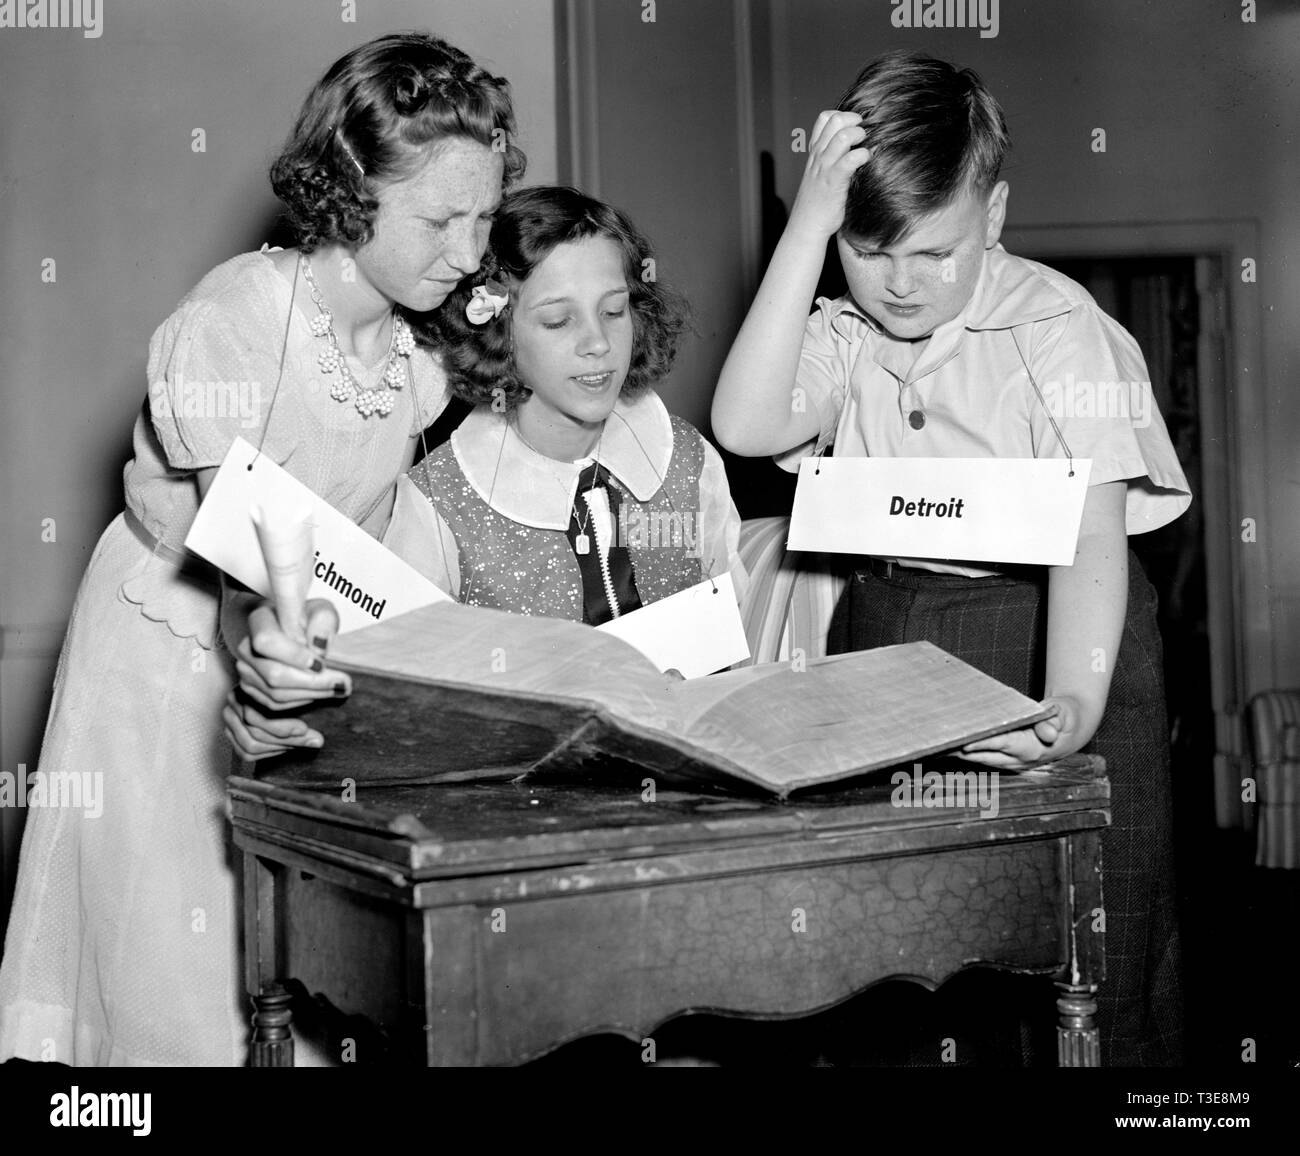 Die eilboten Spelling Bee Teilnehmer Foto inszeniert, Suchen nach Wörtern im Wörterbuch, 1940 Stockfoto